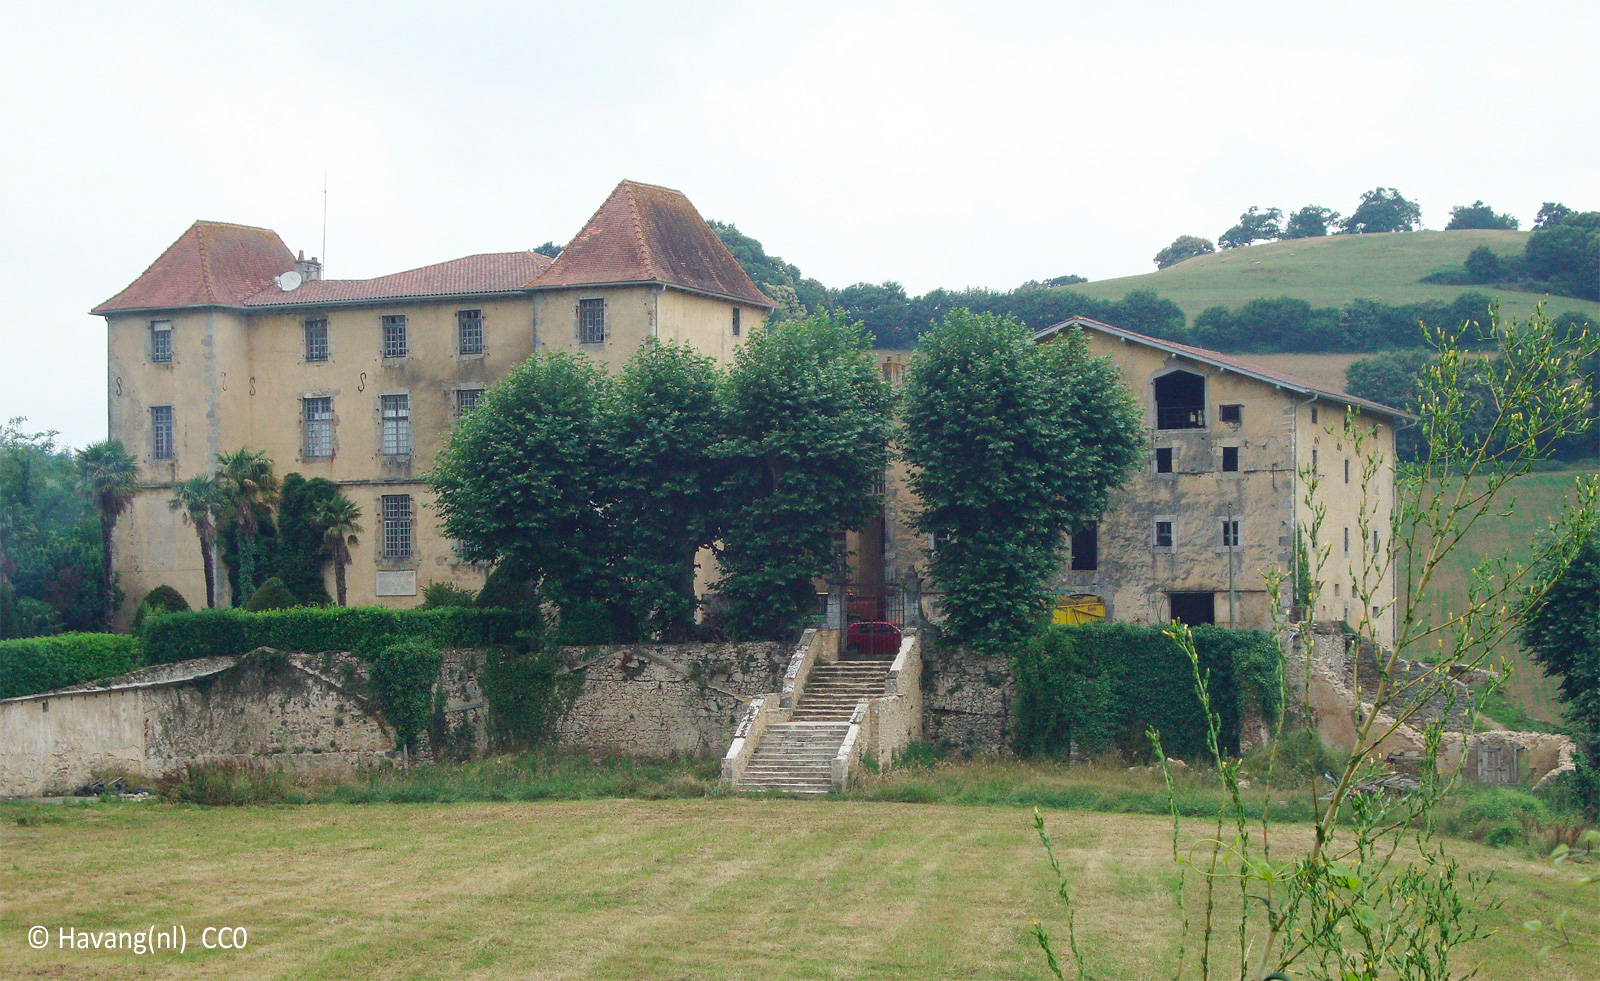 Garroa Castle